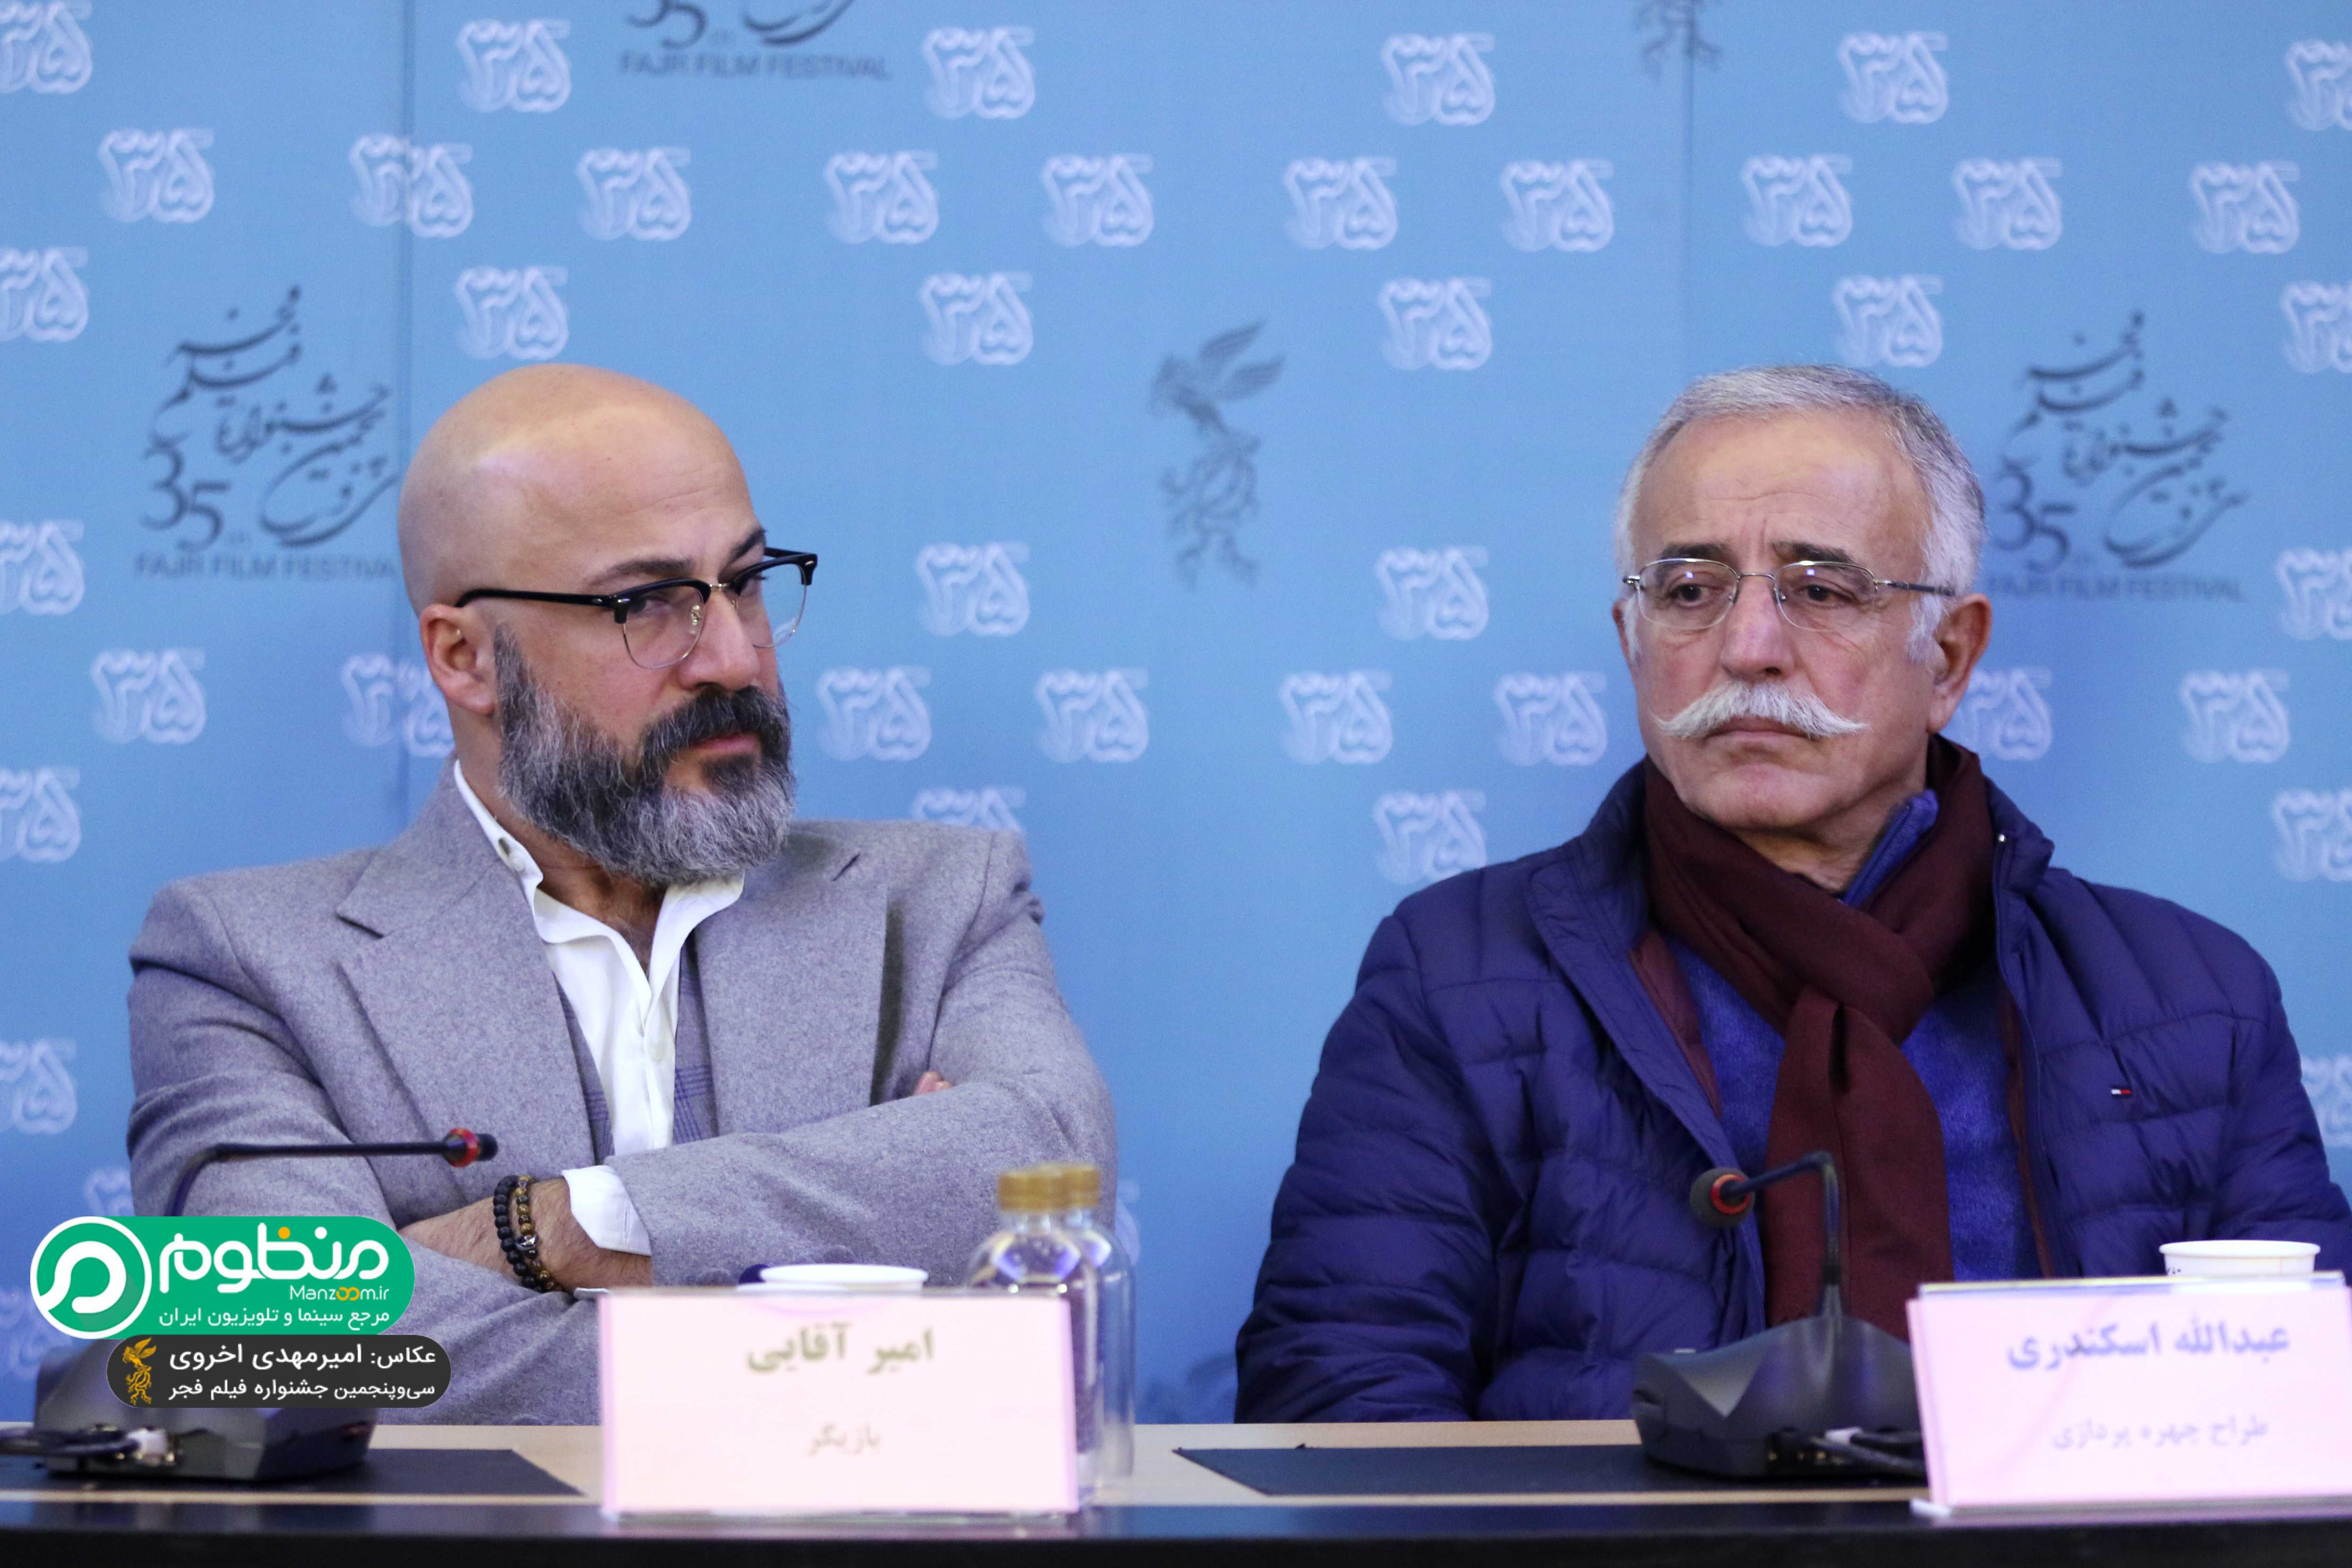 عبدالله اسکندری در نشست خبری فیلم سینمایی بدون تاریخ بدون امضاء به همراه امیر آقایی